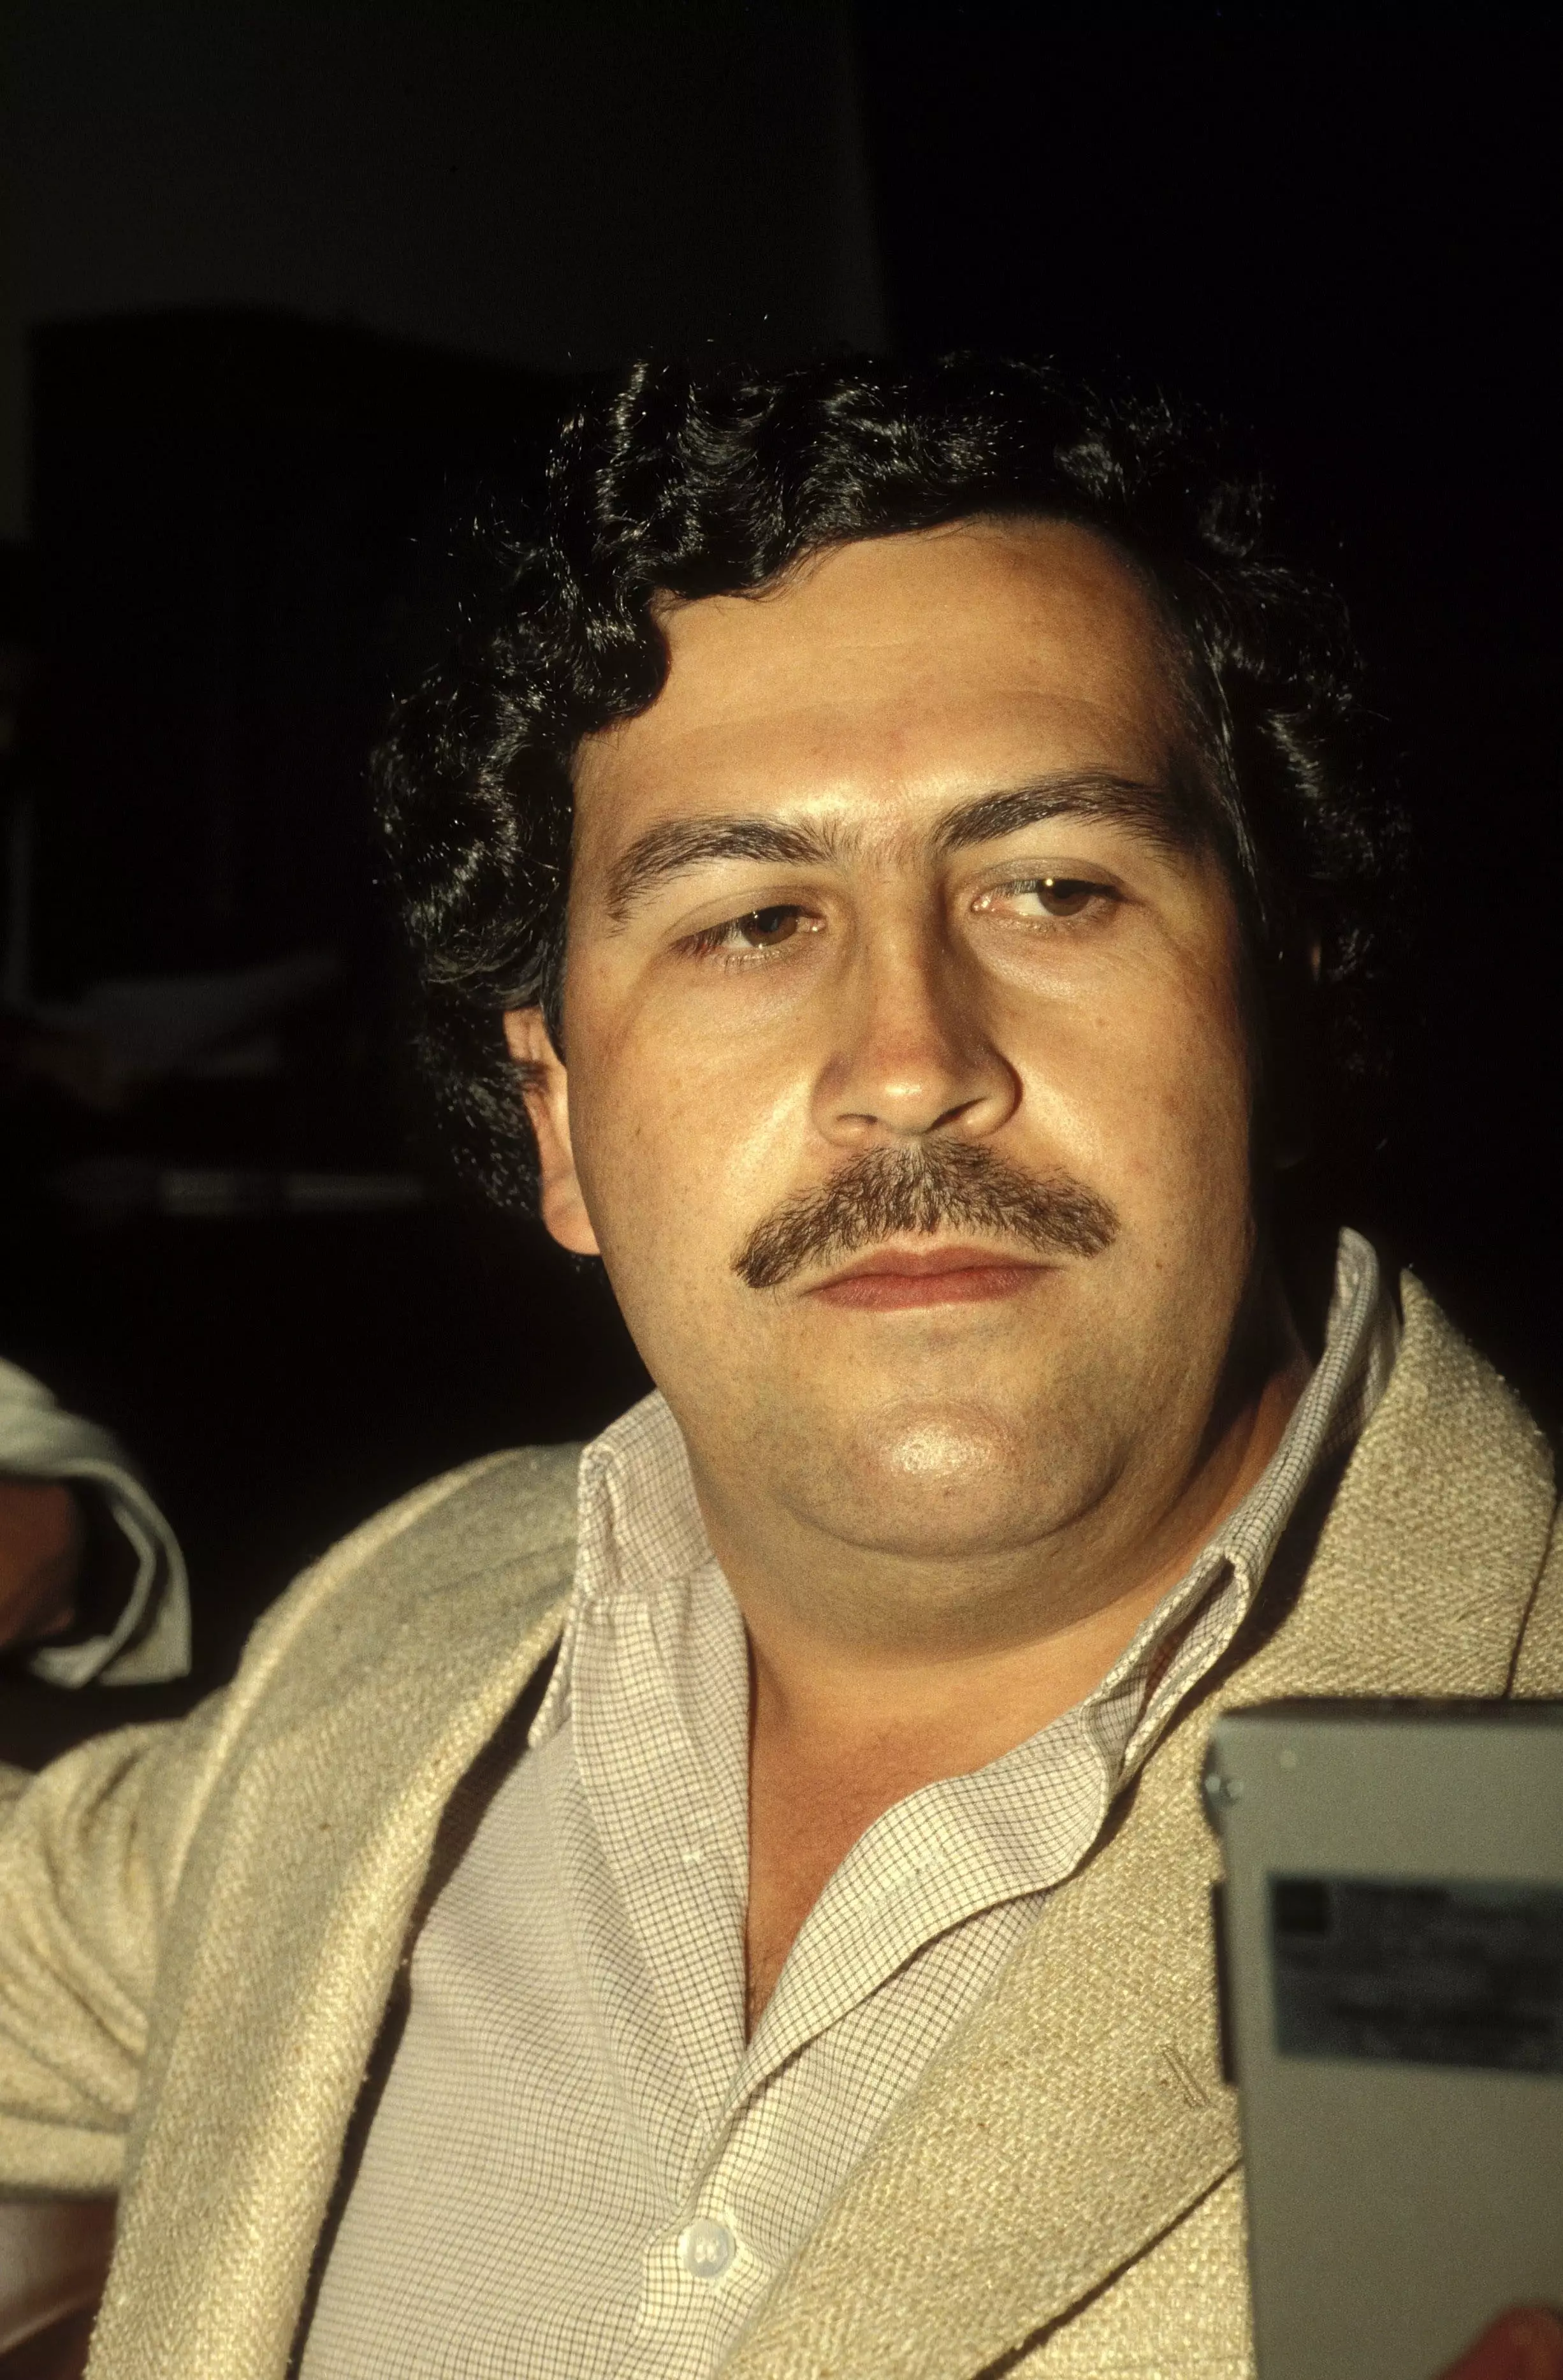 Pablo Escobar in 1988.